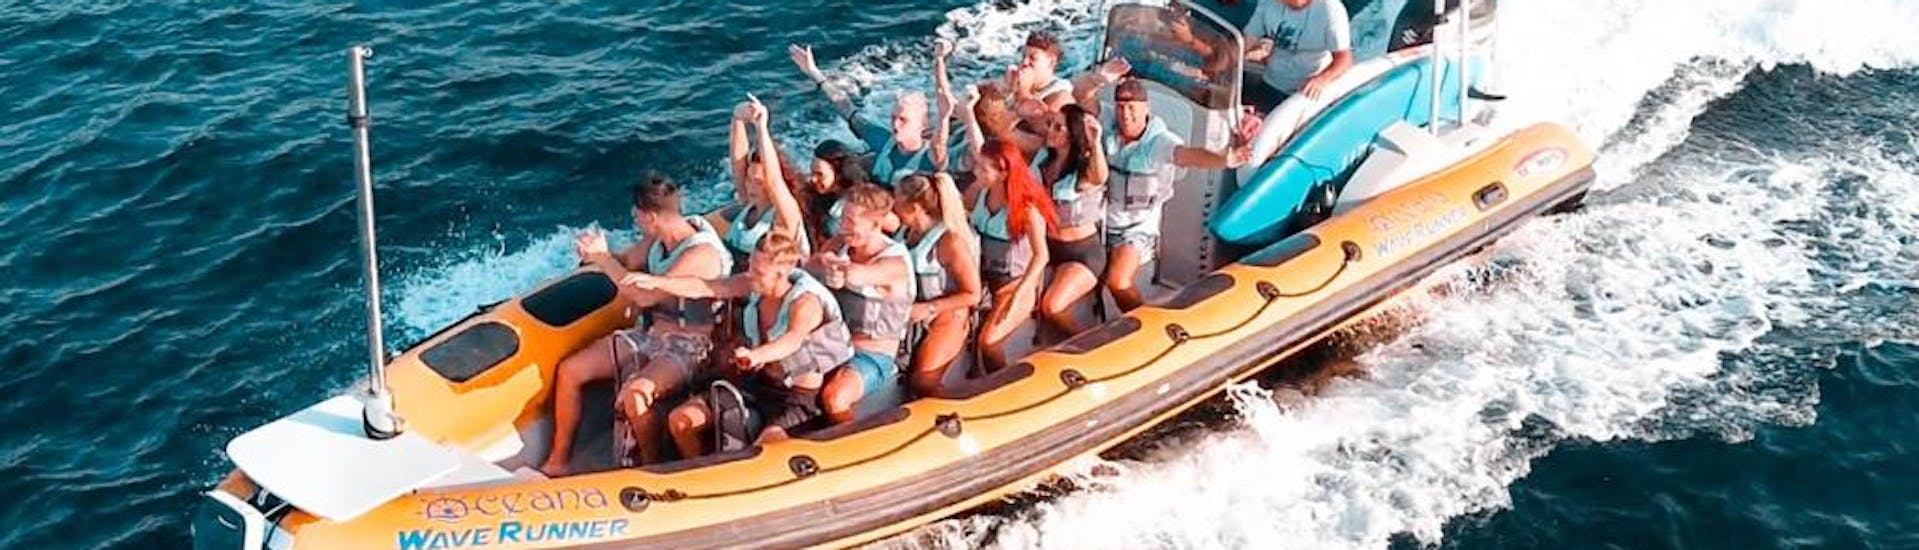 Deelnemers op een speedboot omringd door snelheid en plezier omringd door opspattend water in de baai van Alcúdia tijdens een boottocht van Can Picafort naar natuurpark Llevant met North Coast Adventure Mallorca.